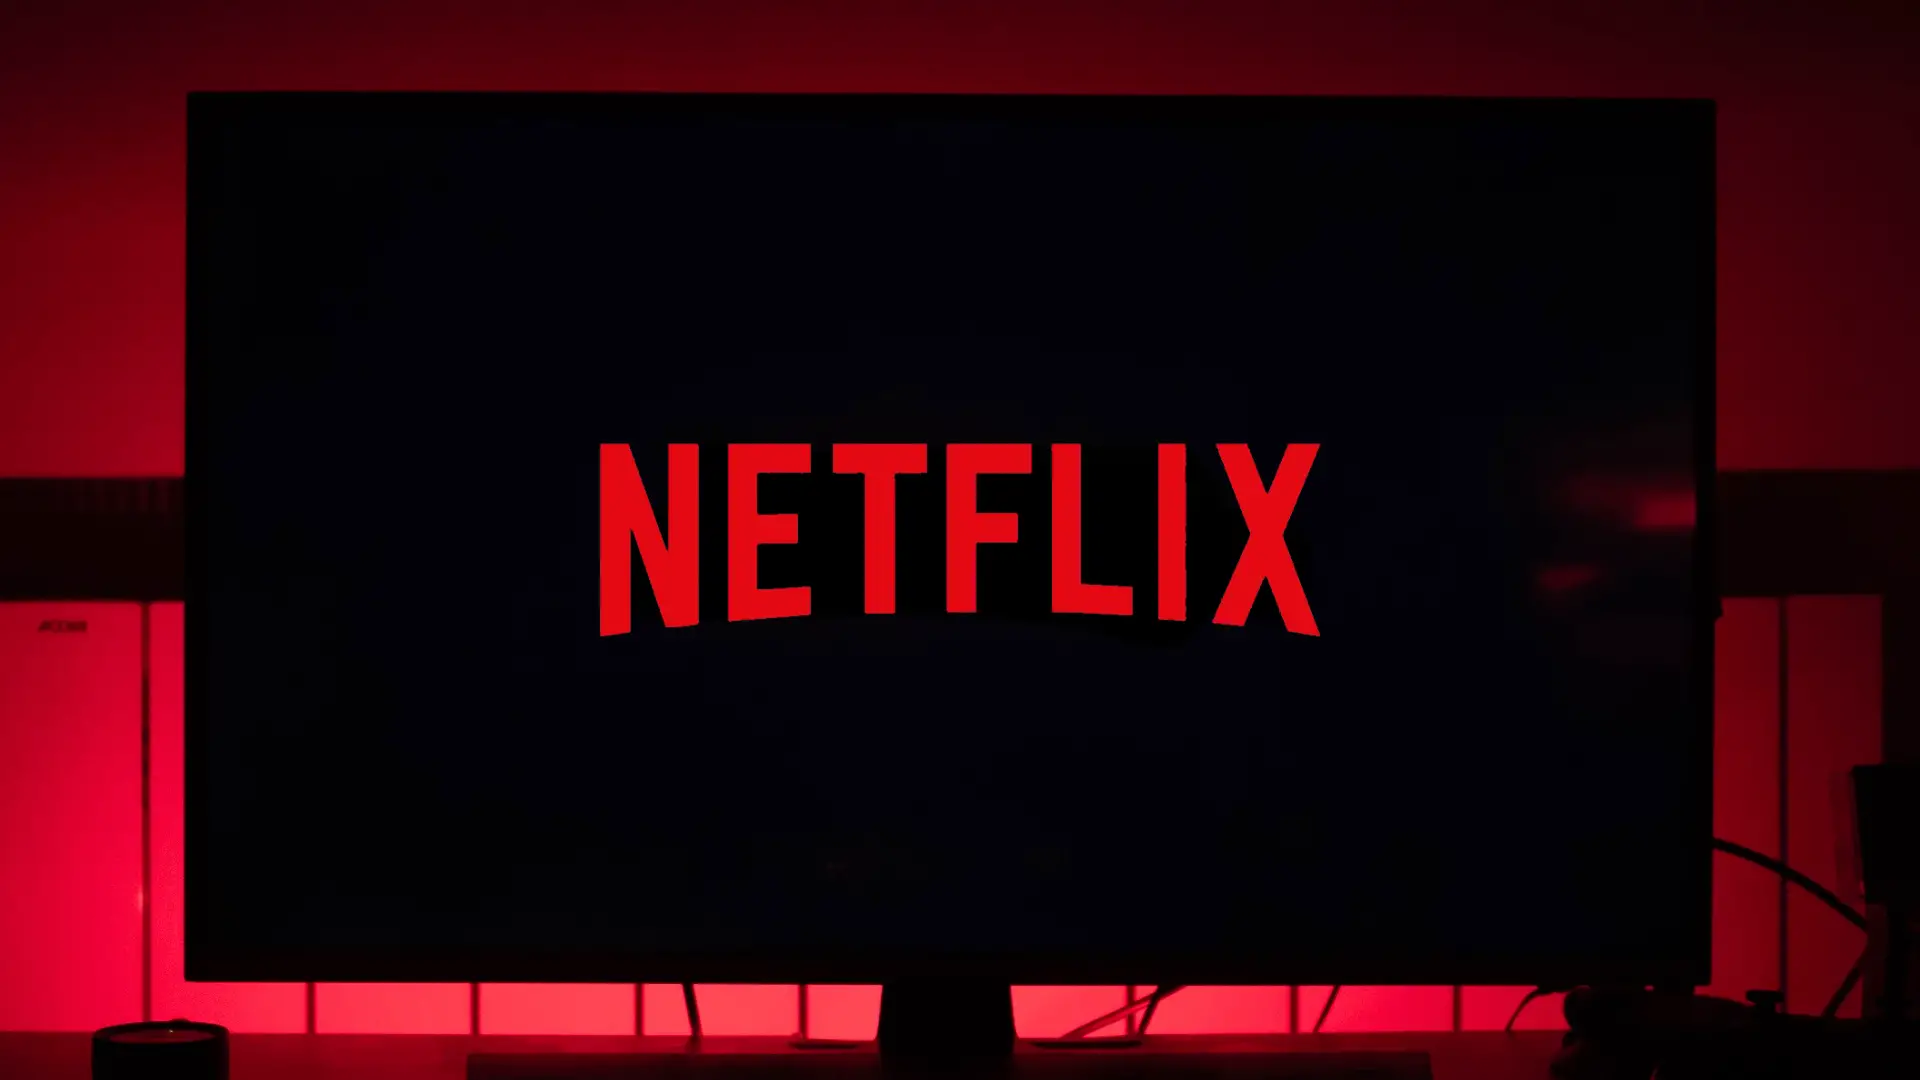 Netflix podera lancar planos com custo reduzido e anuncios